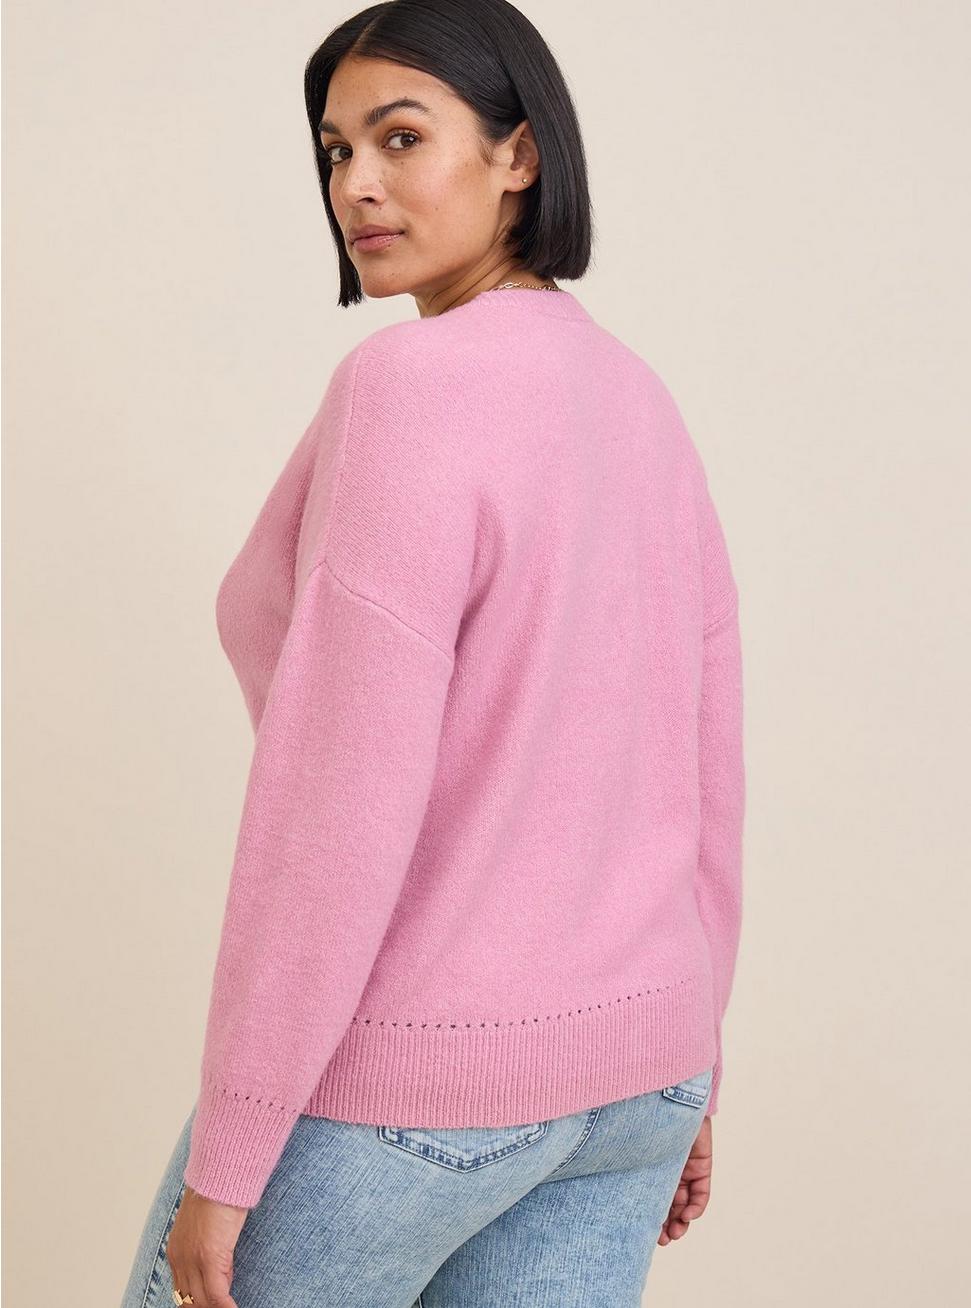 Vegan Cashmere Cardigan V-Neck Drop Shoulder Sweater, PINK, alternate